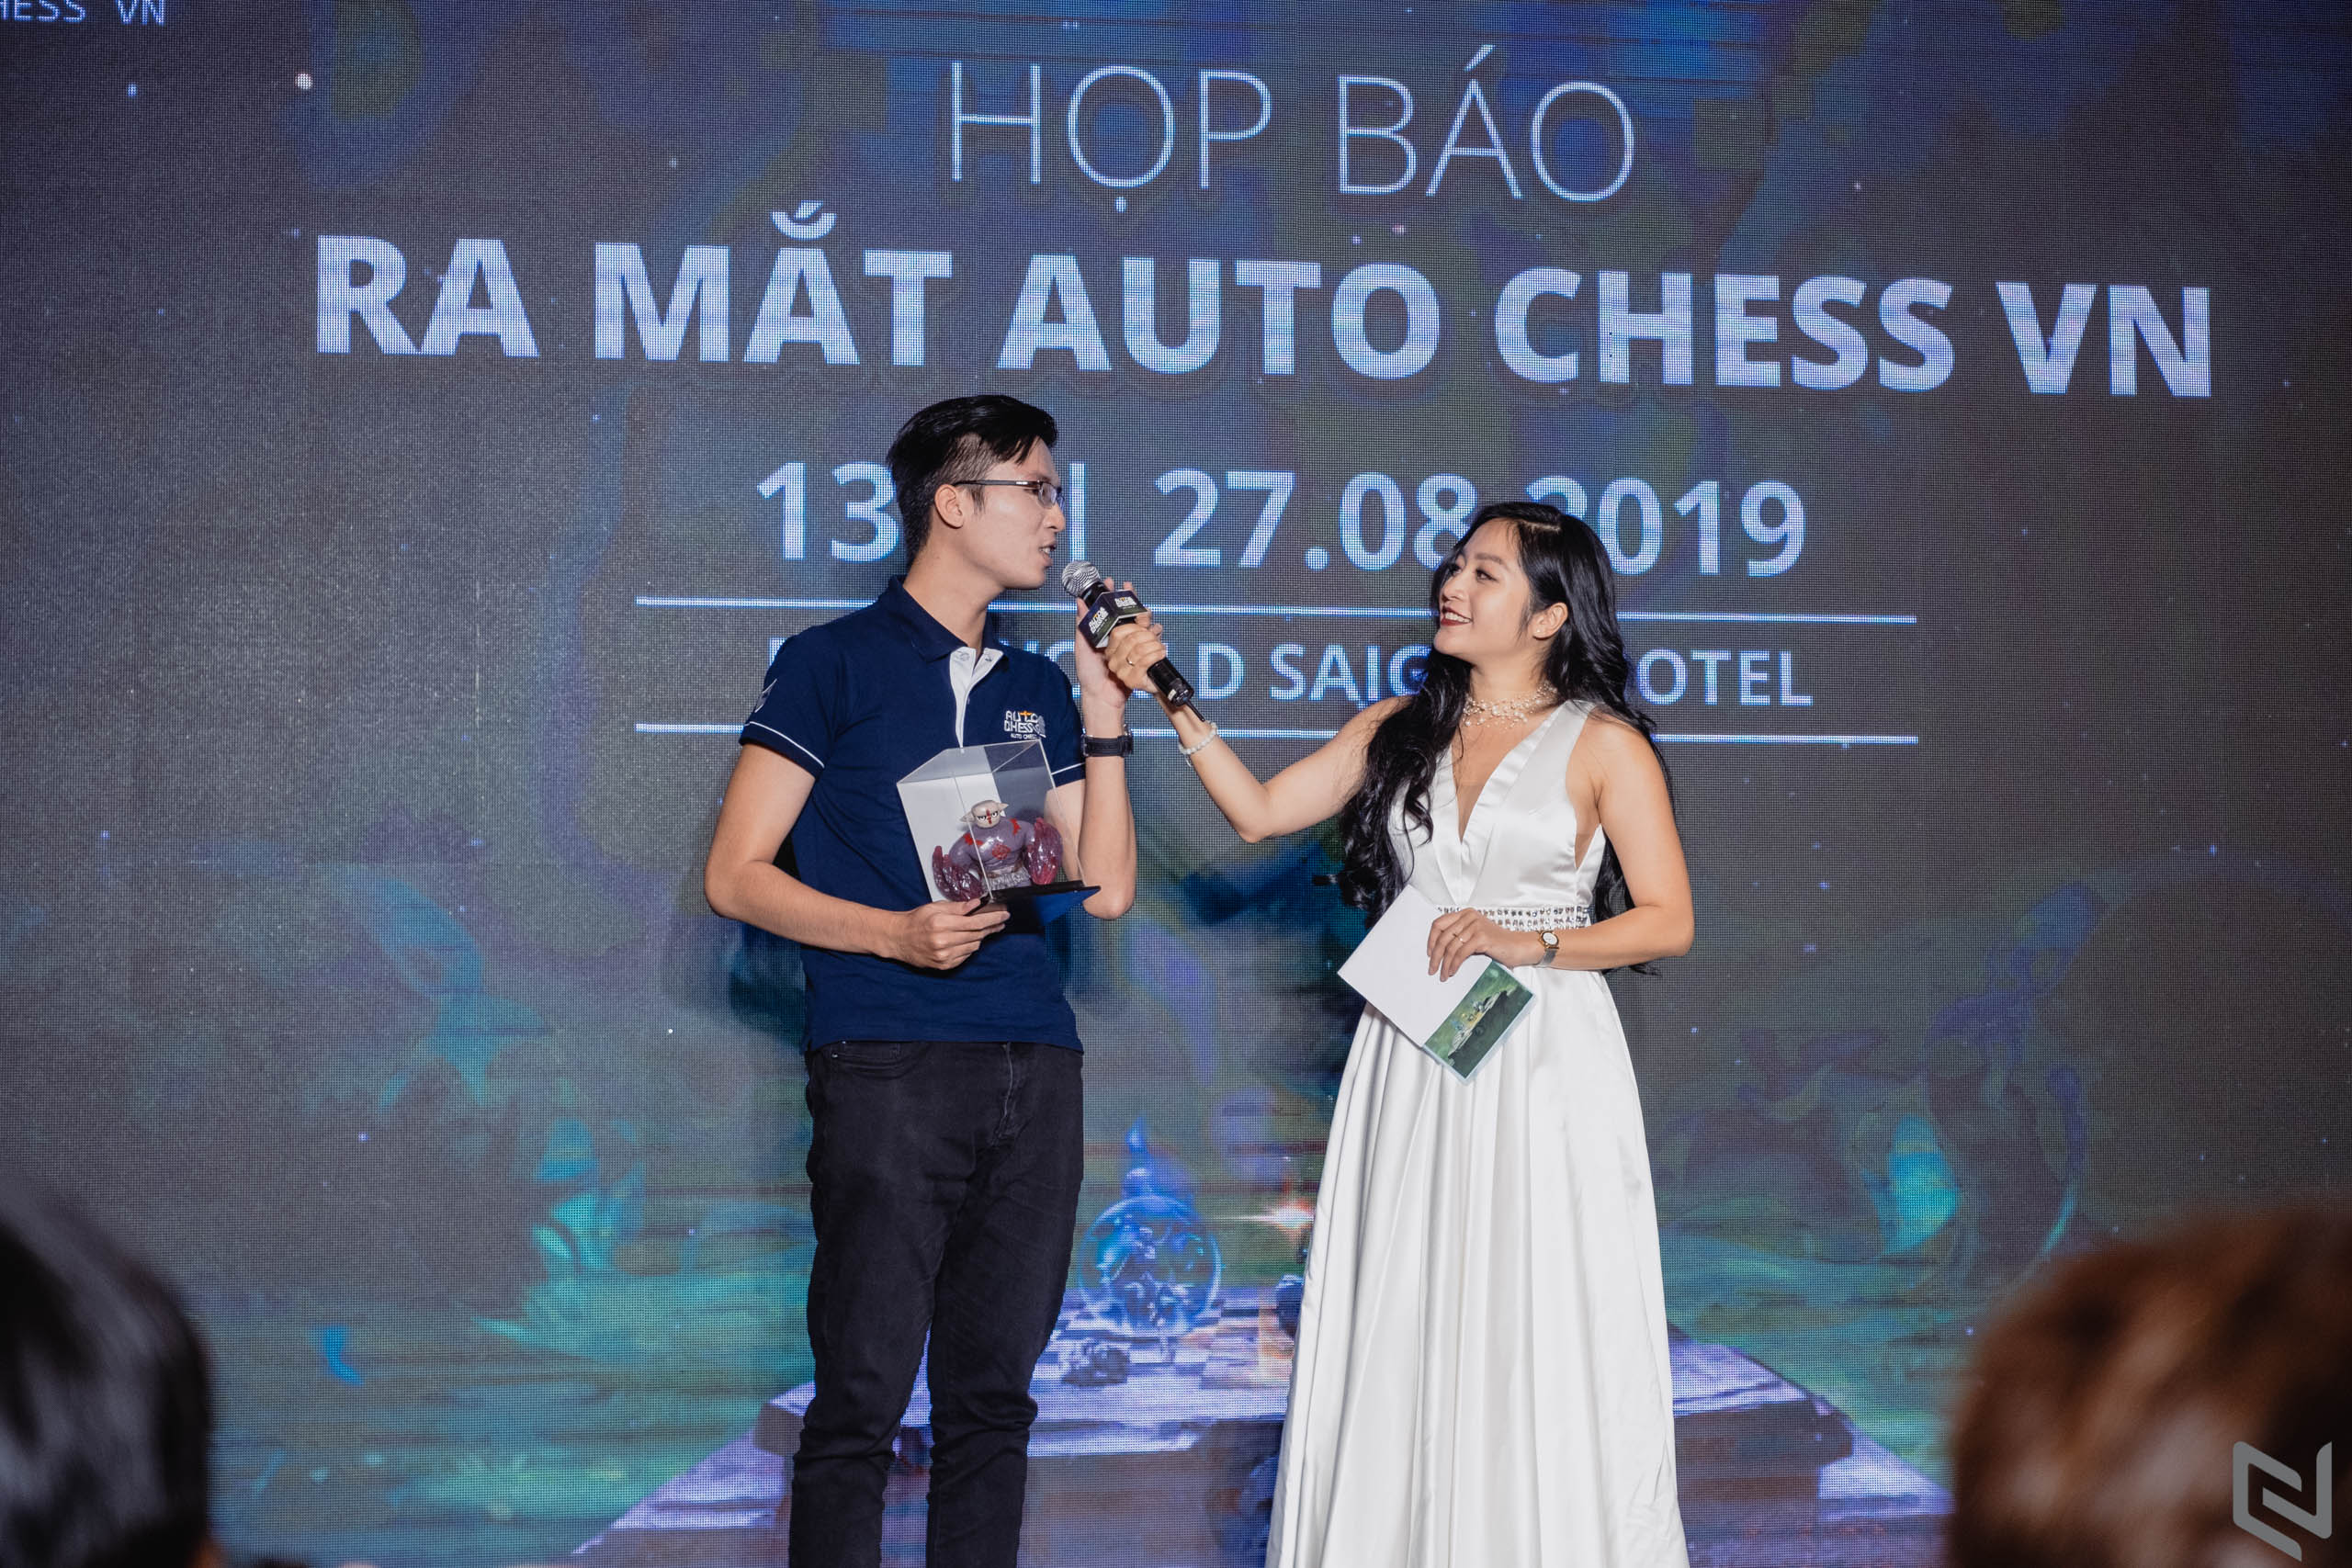 VNG mang cờ nhân phẩm Auto Chess VN về Việt Nam, tổ chức giải đấu cho cờ thủ